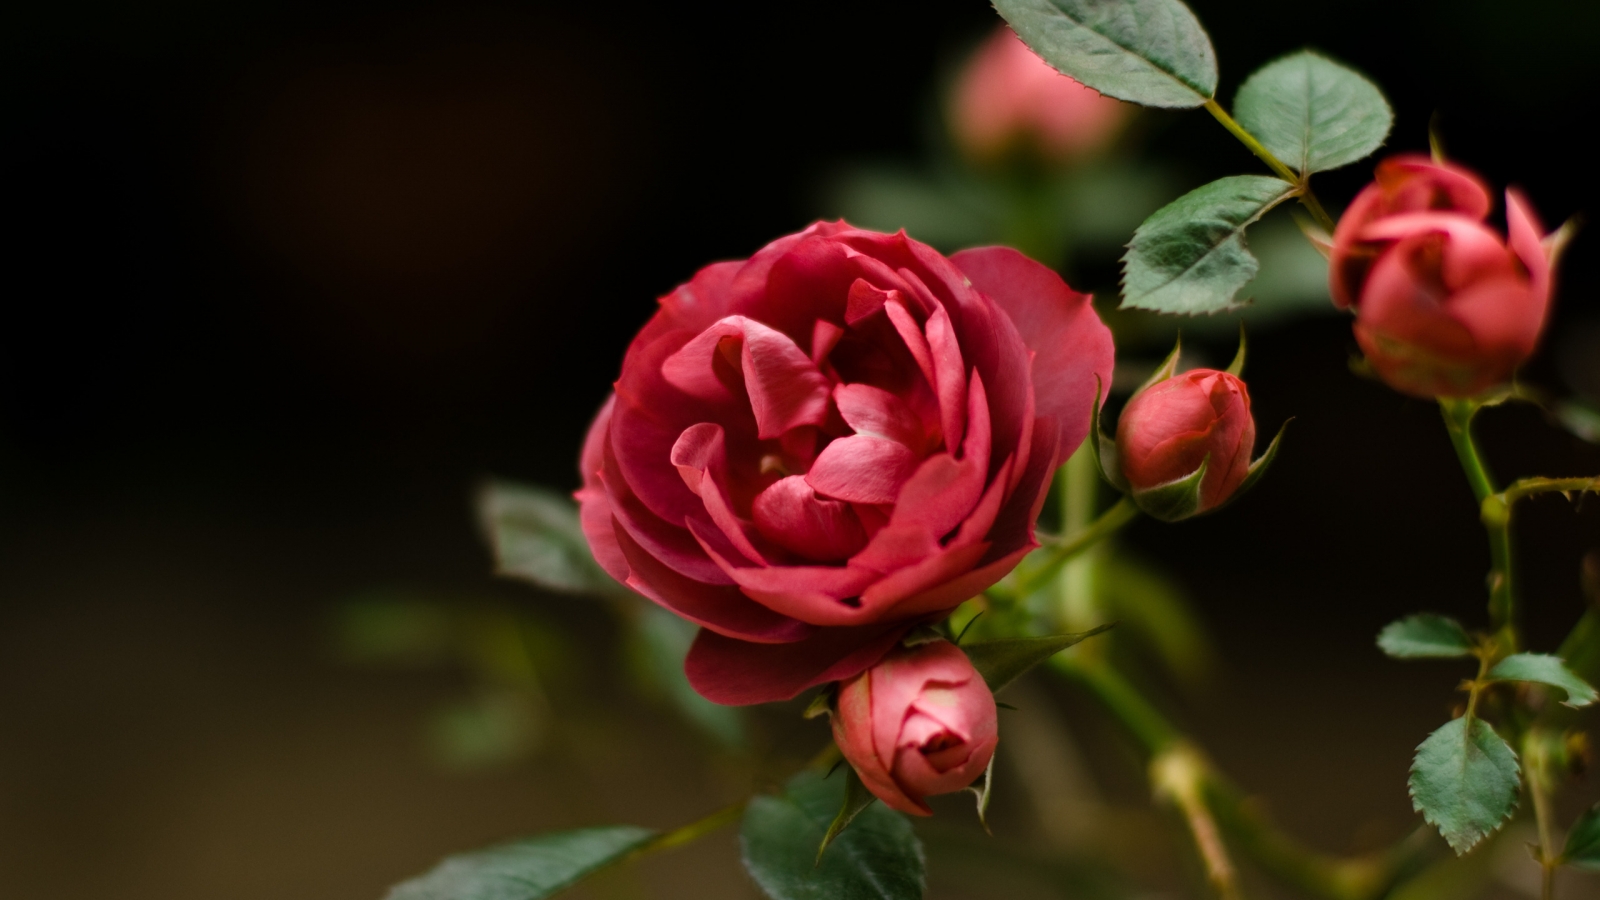 Rose Flower for 1600 x 900 HDTV resolution